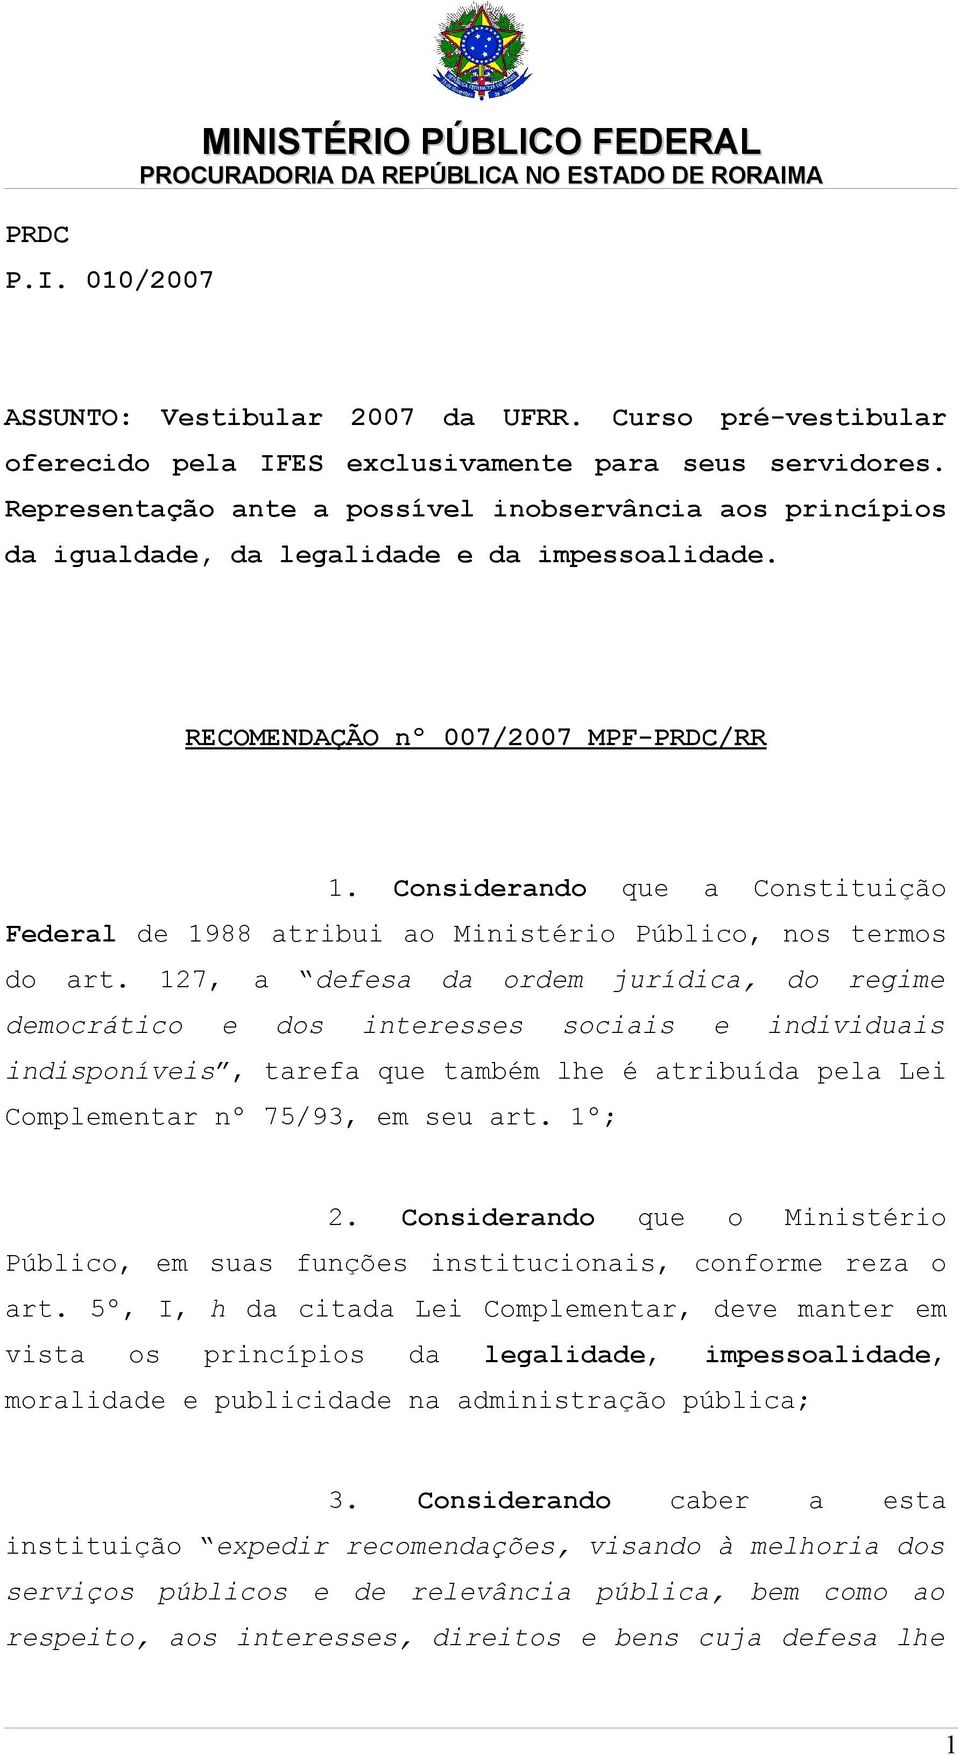 Considerando que a Constituição Federal de 1988 atribui ao Ministério Público, nos termos do art.